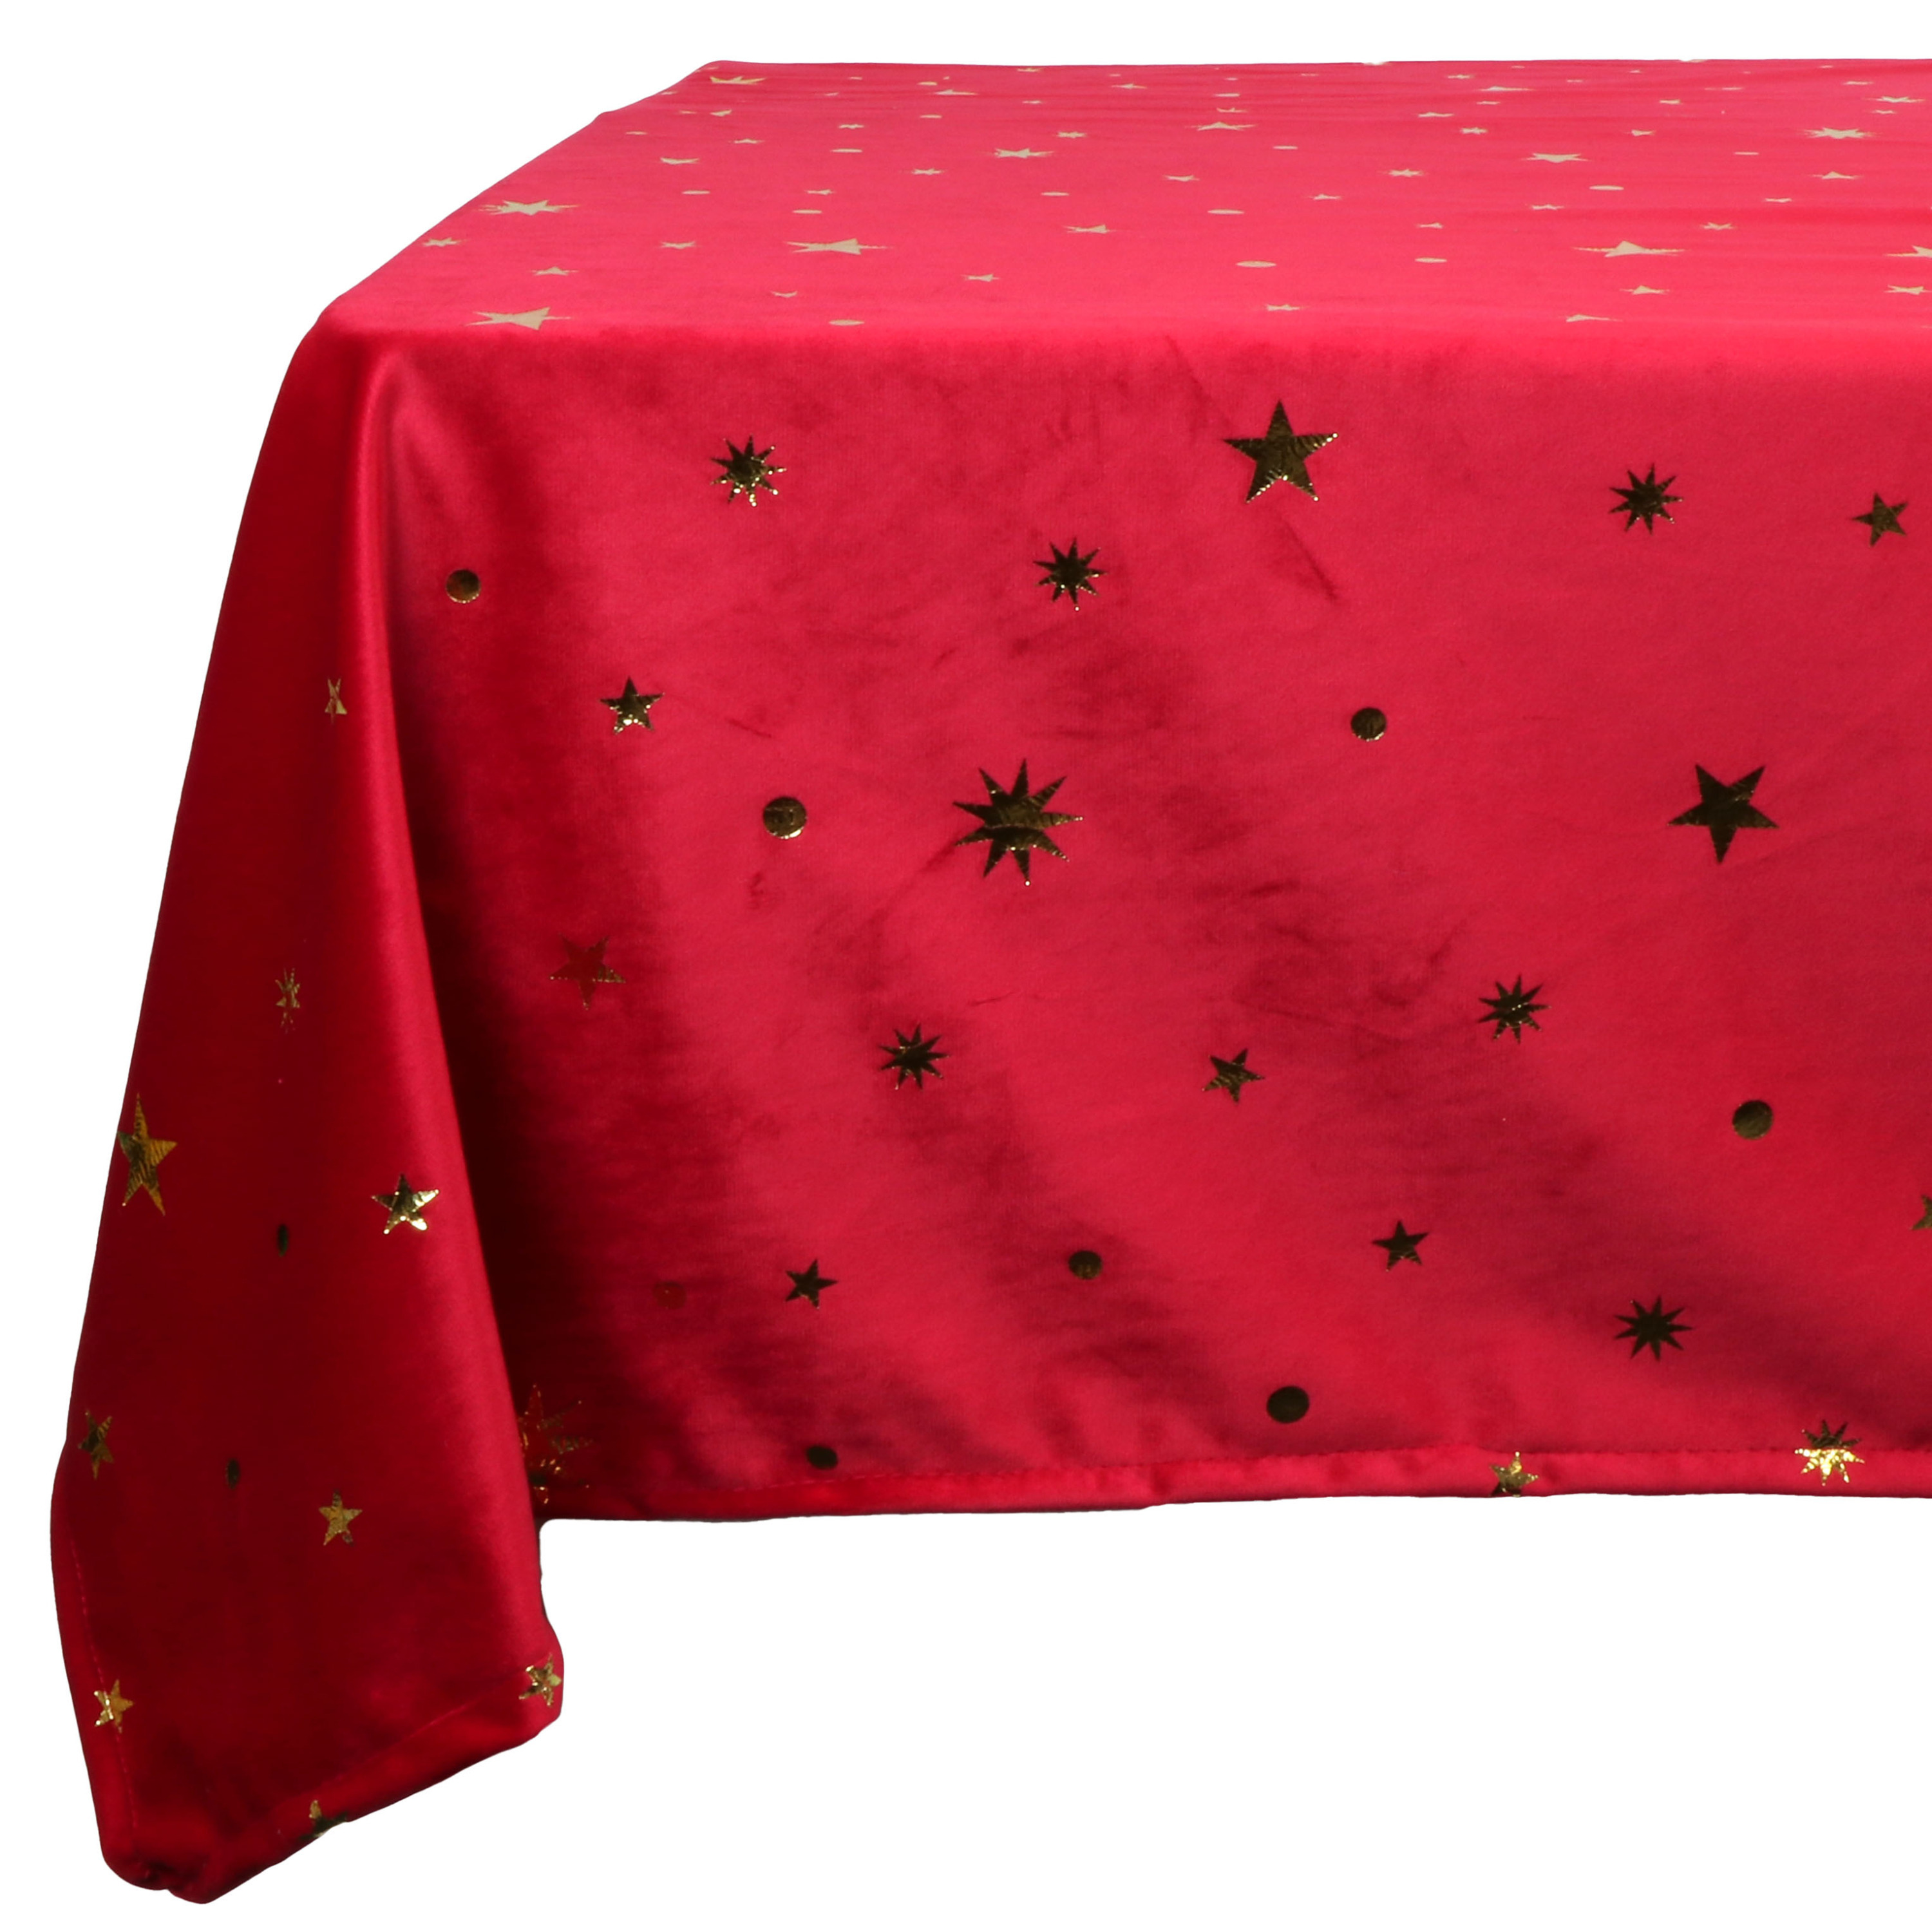 Unique Living tafelkleed kerst -rood met gouden sterren -250 x 150cm -